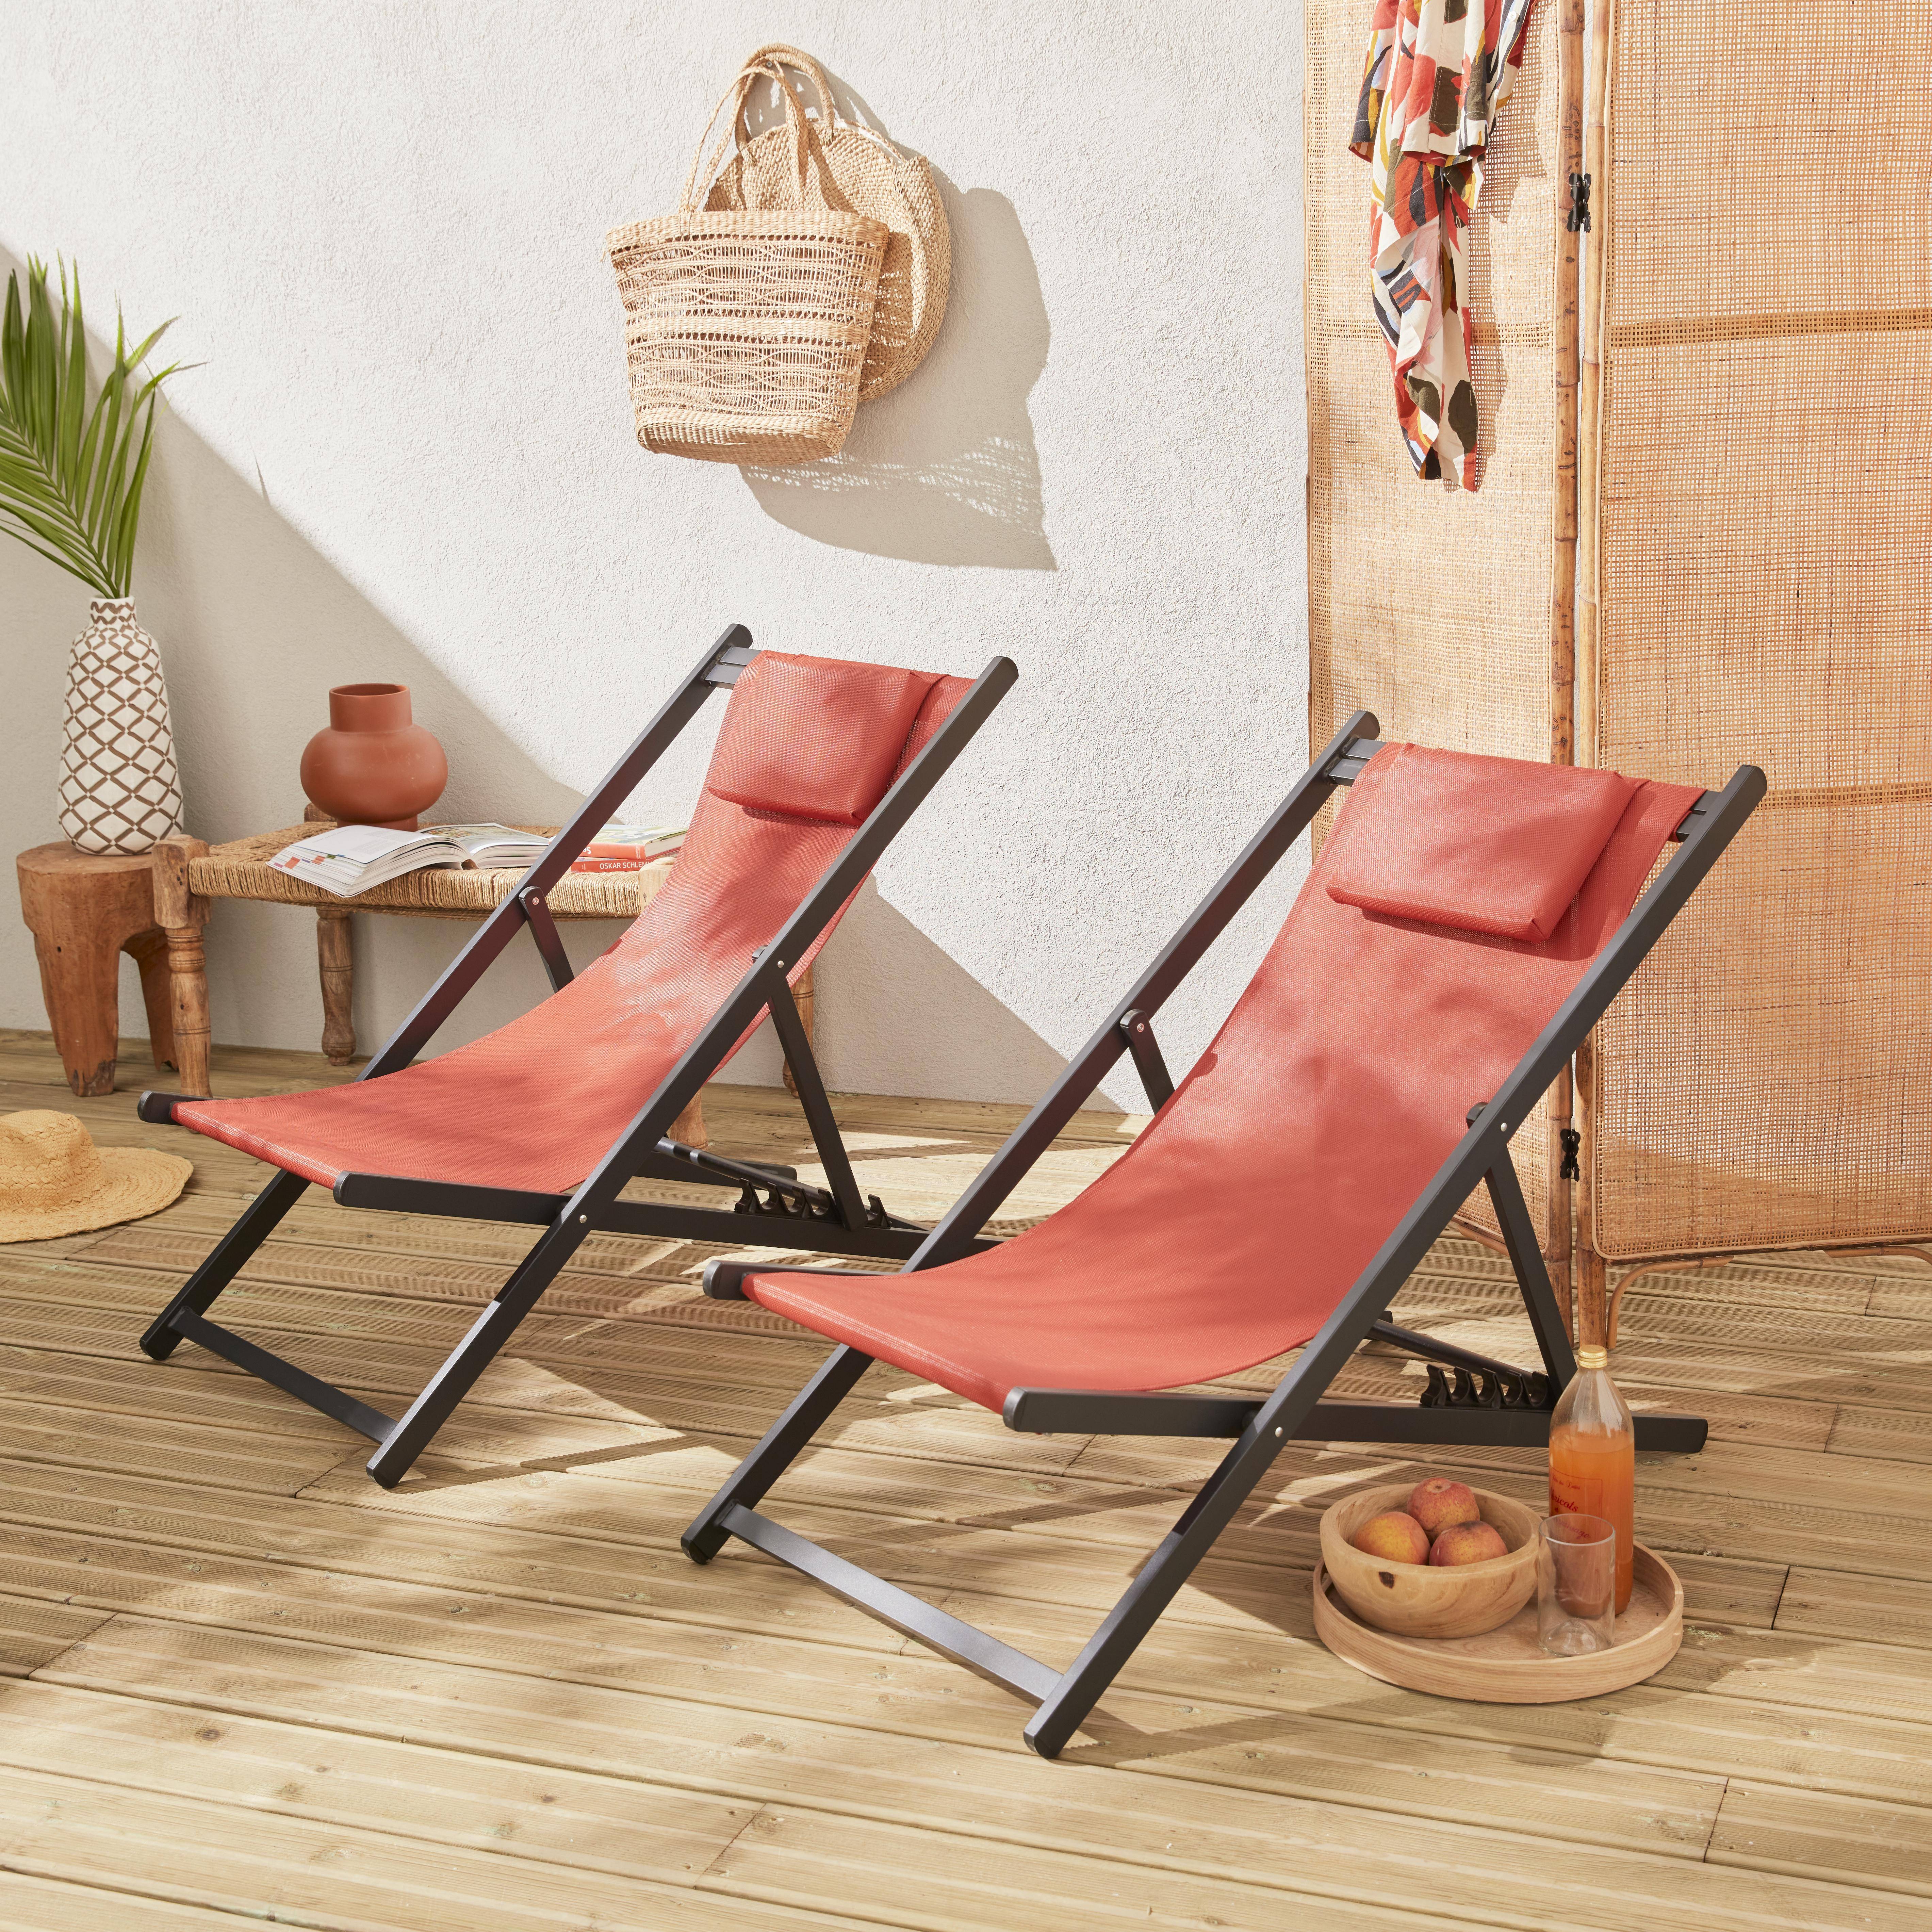 Juego de 2 sillas para tomar sol - Gaia terracota - Aluminio antracita y textileno terracota con reposacabezas.,sweeek,Photo1